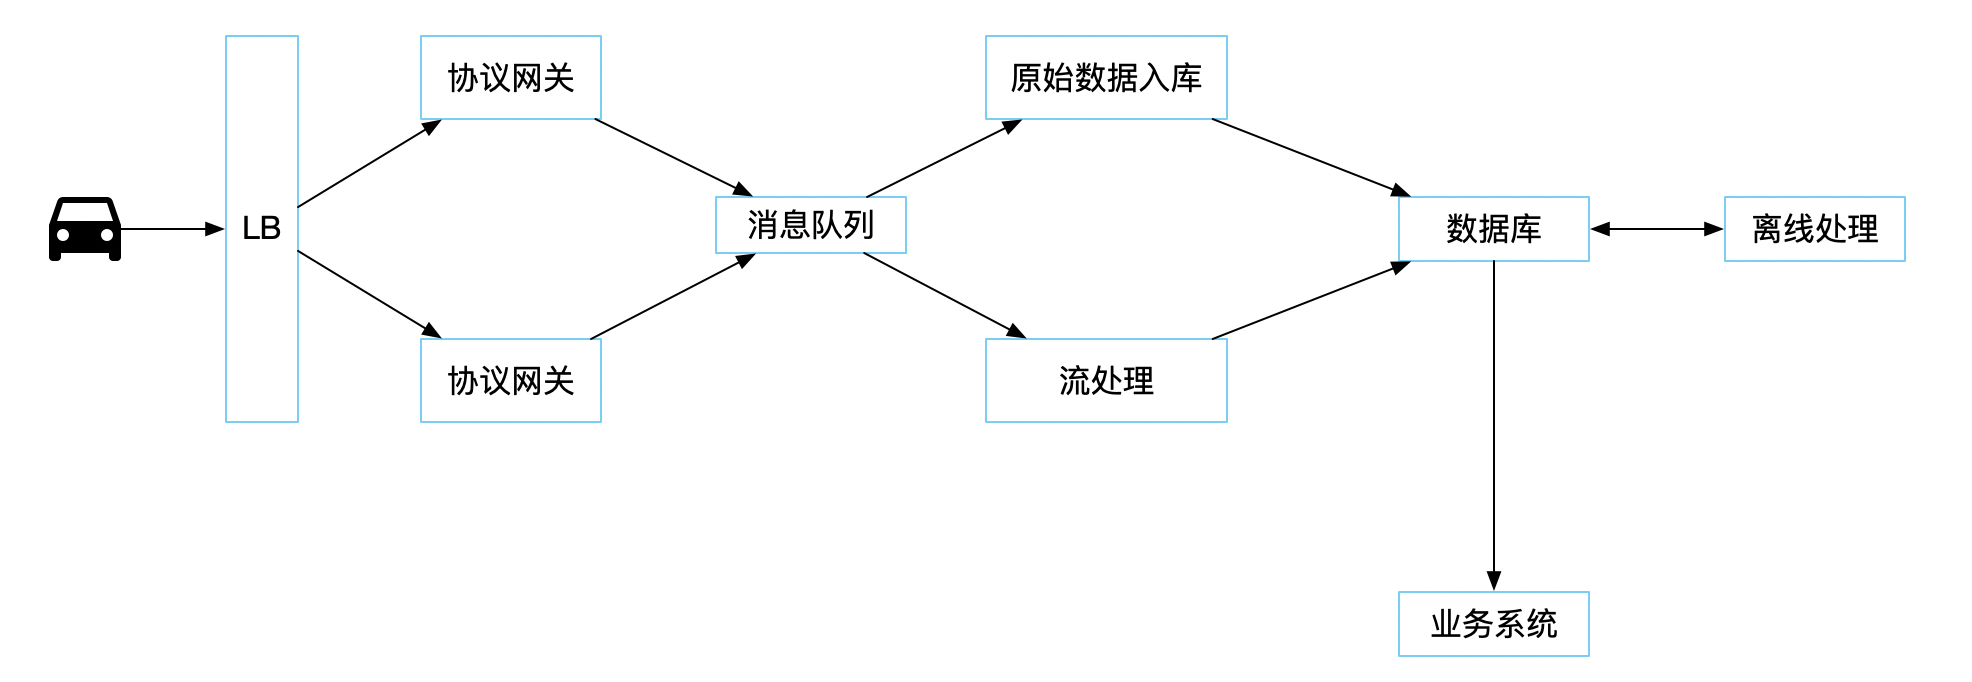 车联网系统架构示意图